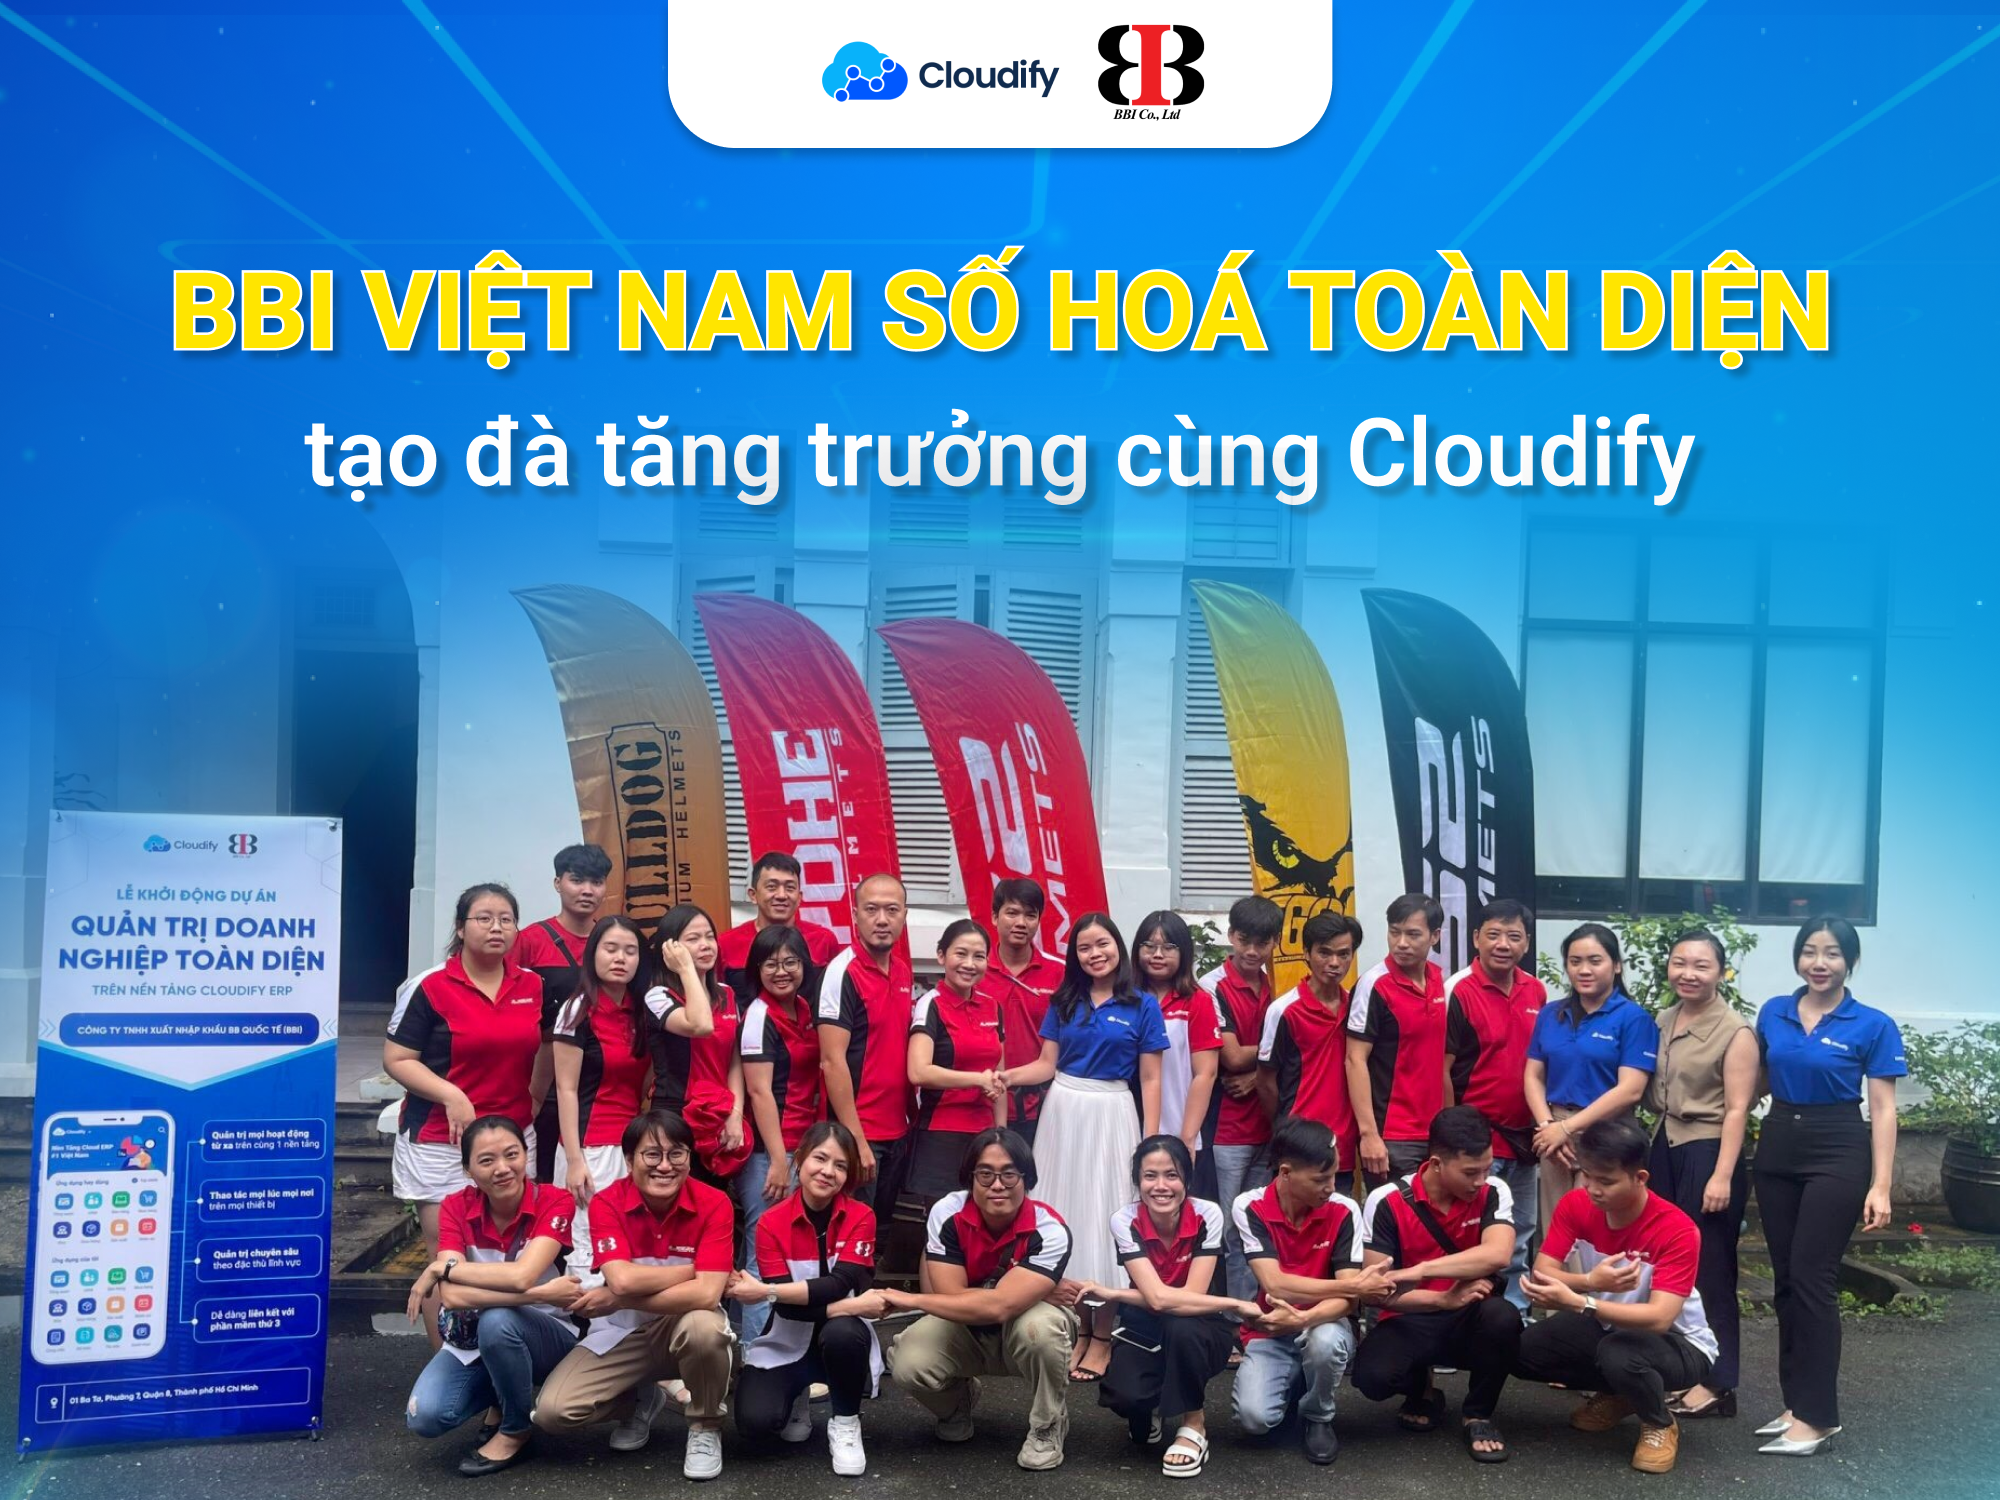 BBI Việt Nam số hóa trên nền tảng Cloudify ERP